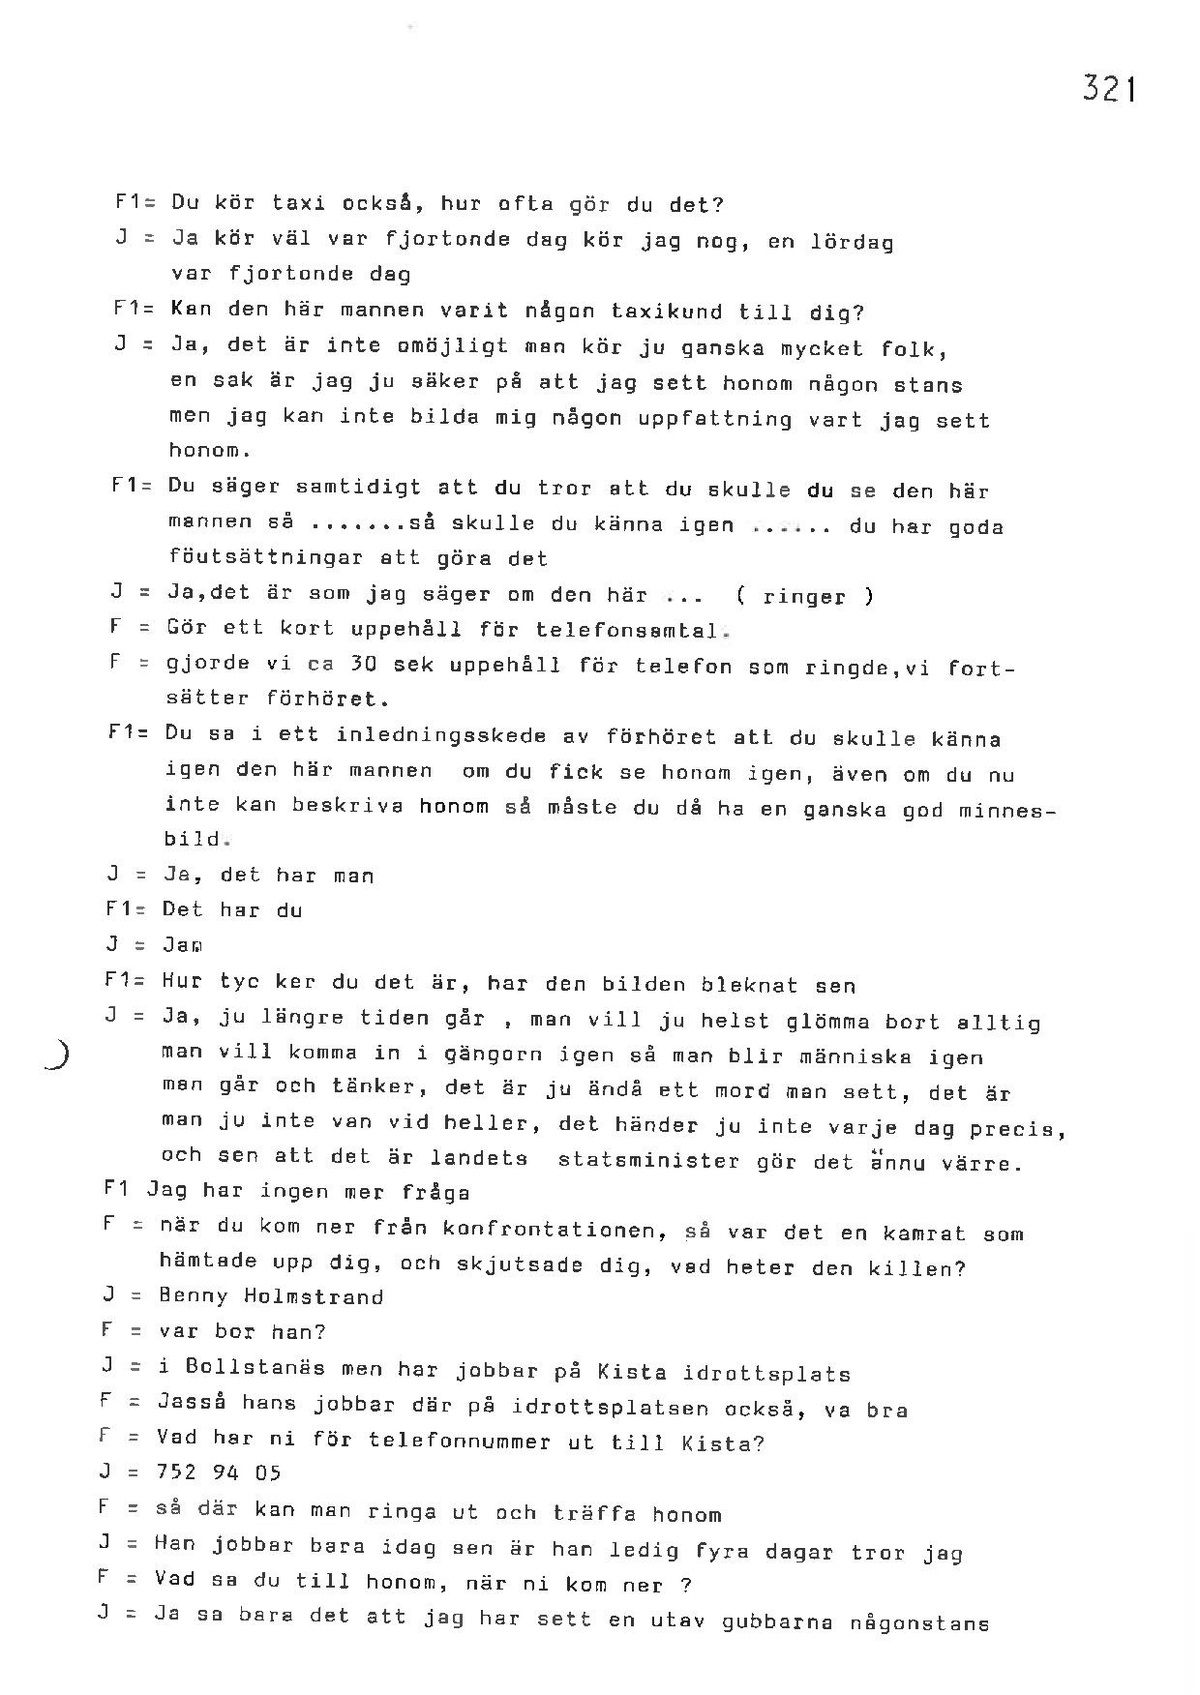 Pol-1986-10-15 1215 EE9979-00-G VITTNESFÖRHÖR-Hans-Johansson.pdf